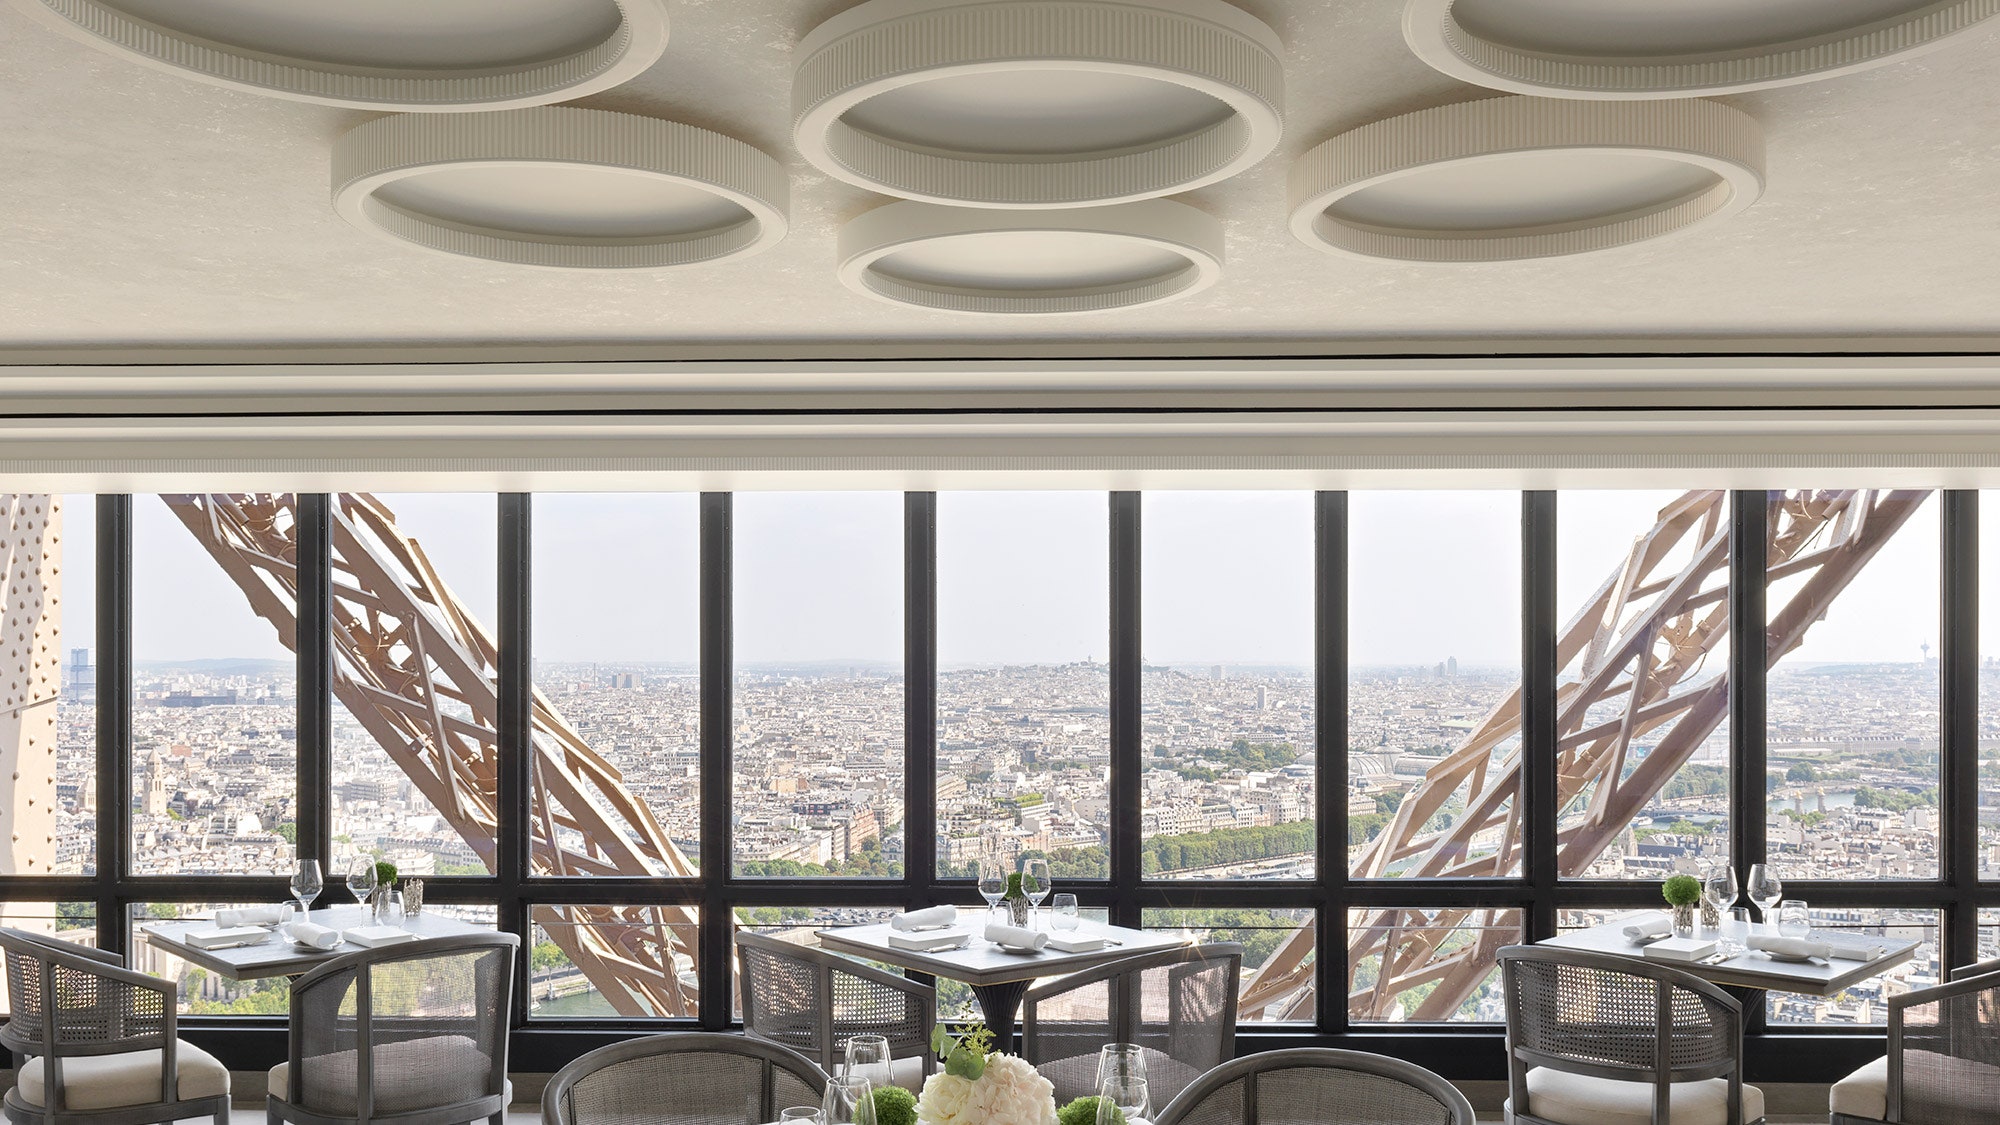 Обновленный ресторан Le Jules Verne в Париже